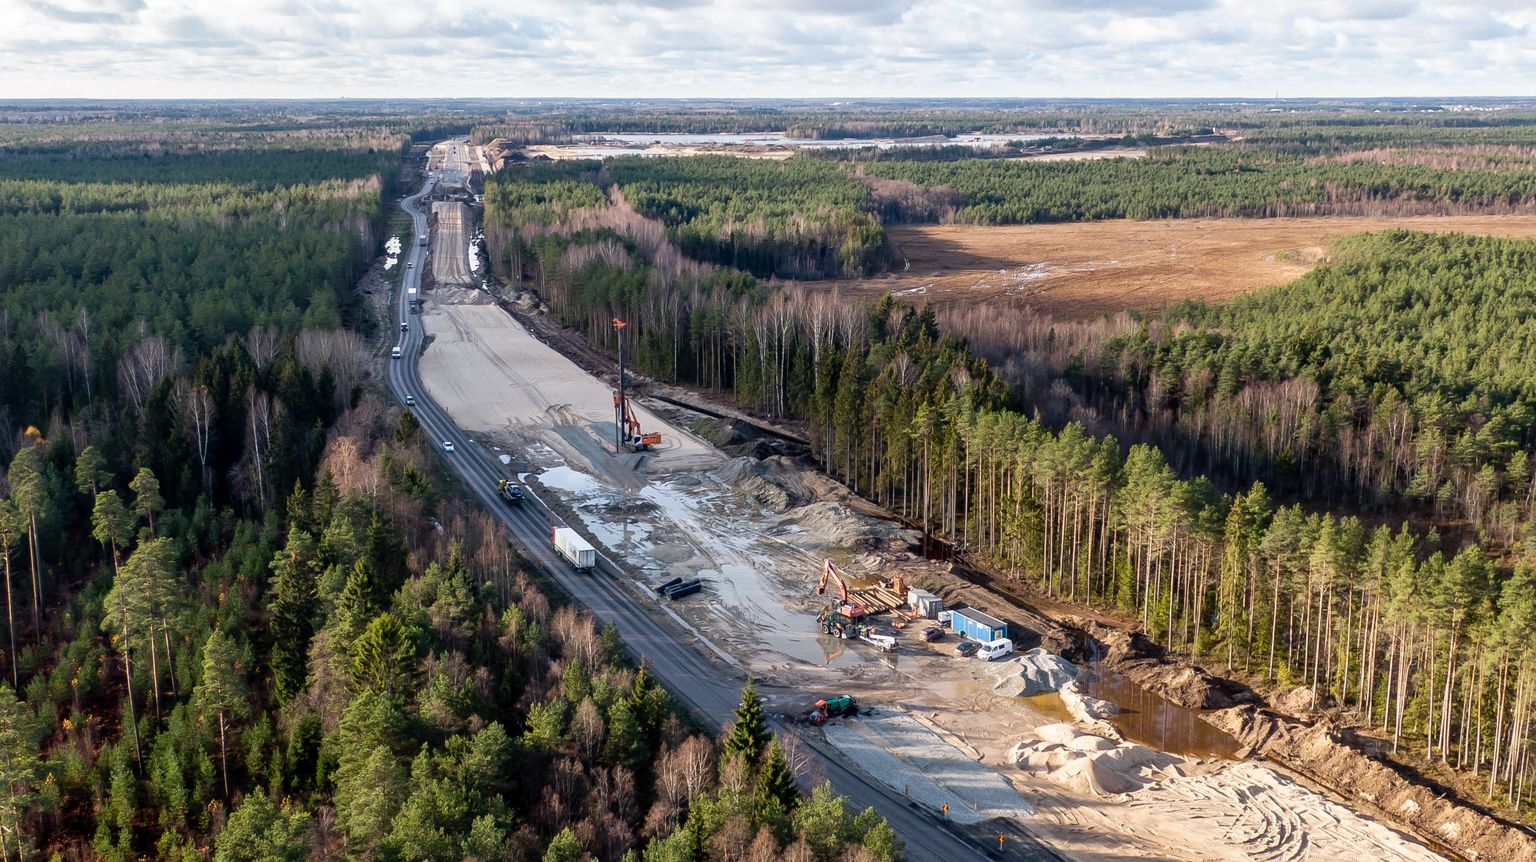 Rail Balticu ehitus. 

Rail Baltica construction begins, the Saustinõmme viaduct.
FOTO:SANDER ILVEST/POSTIMEES